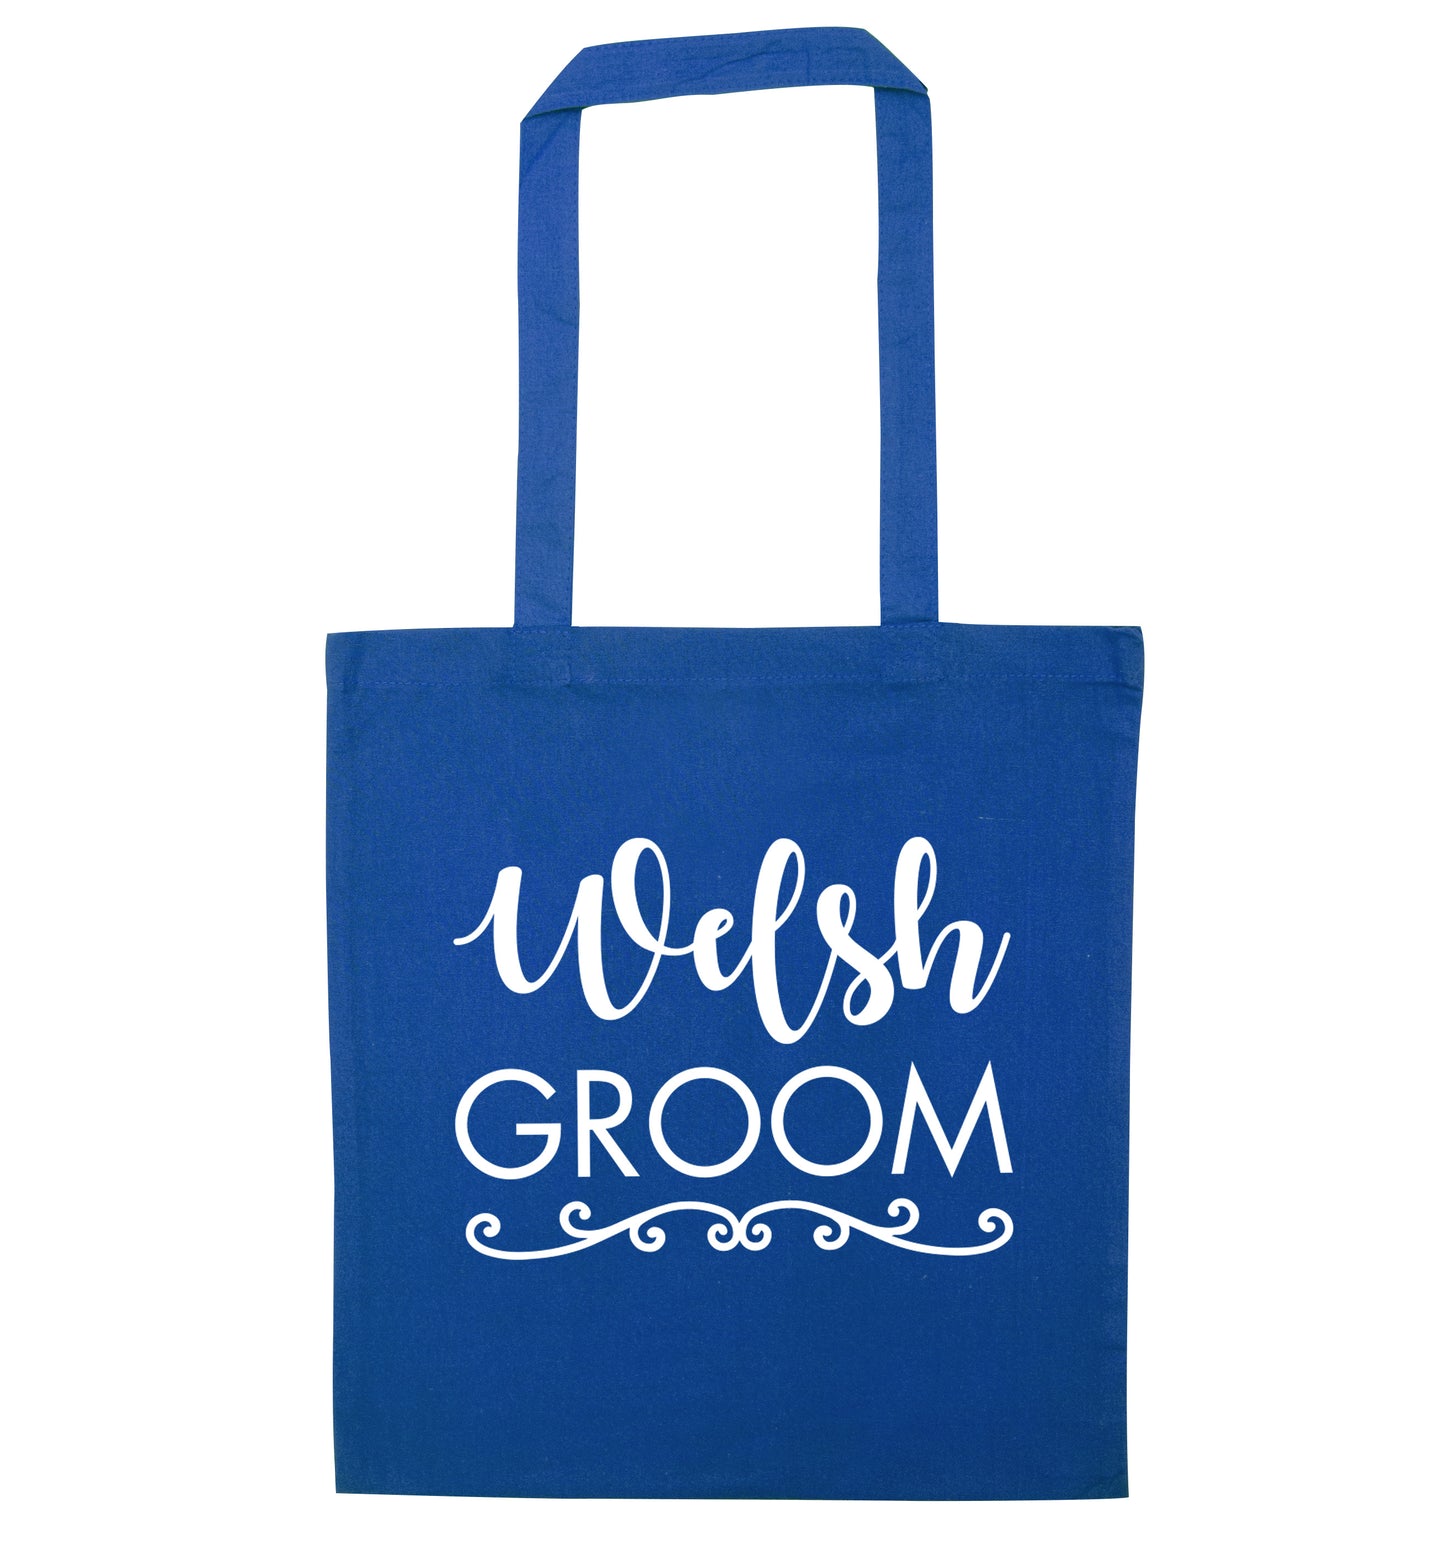 Welsh groom blue tote bag